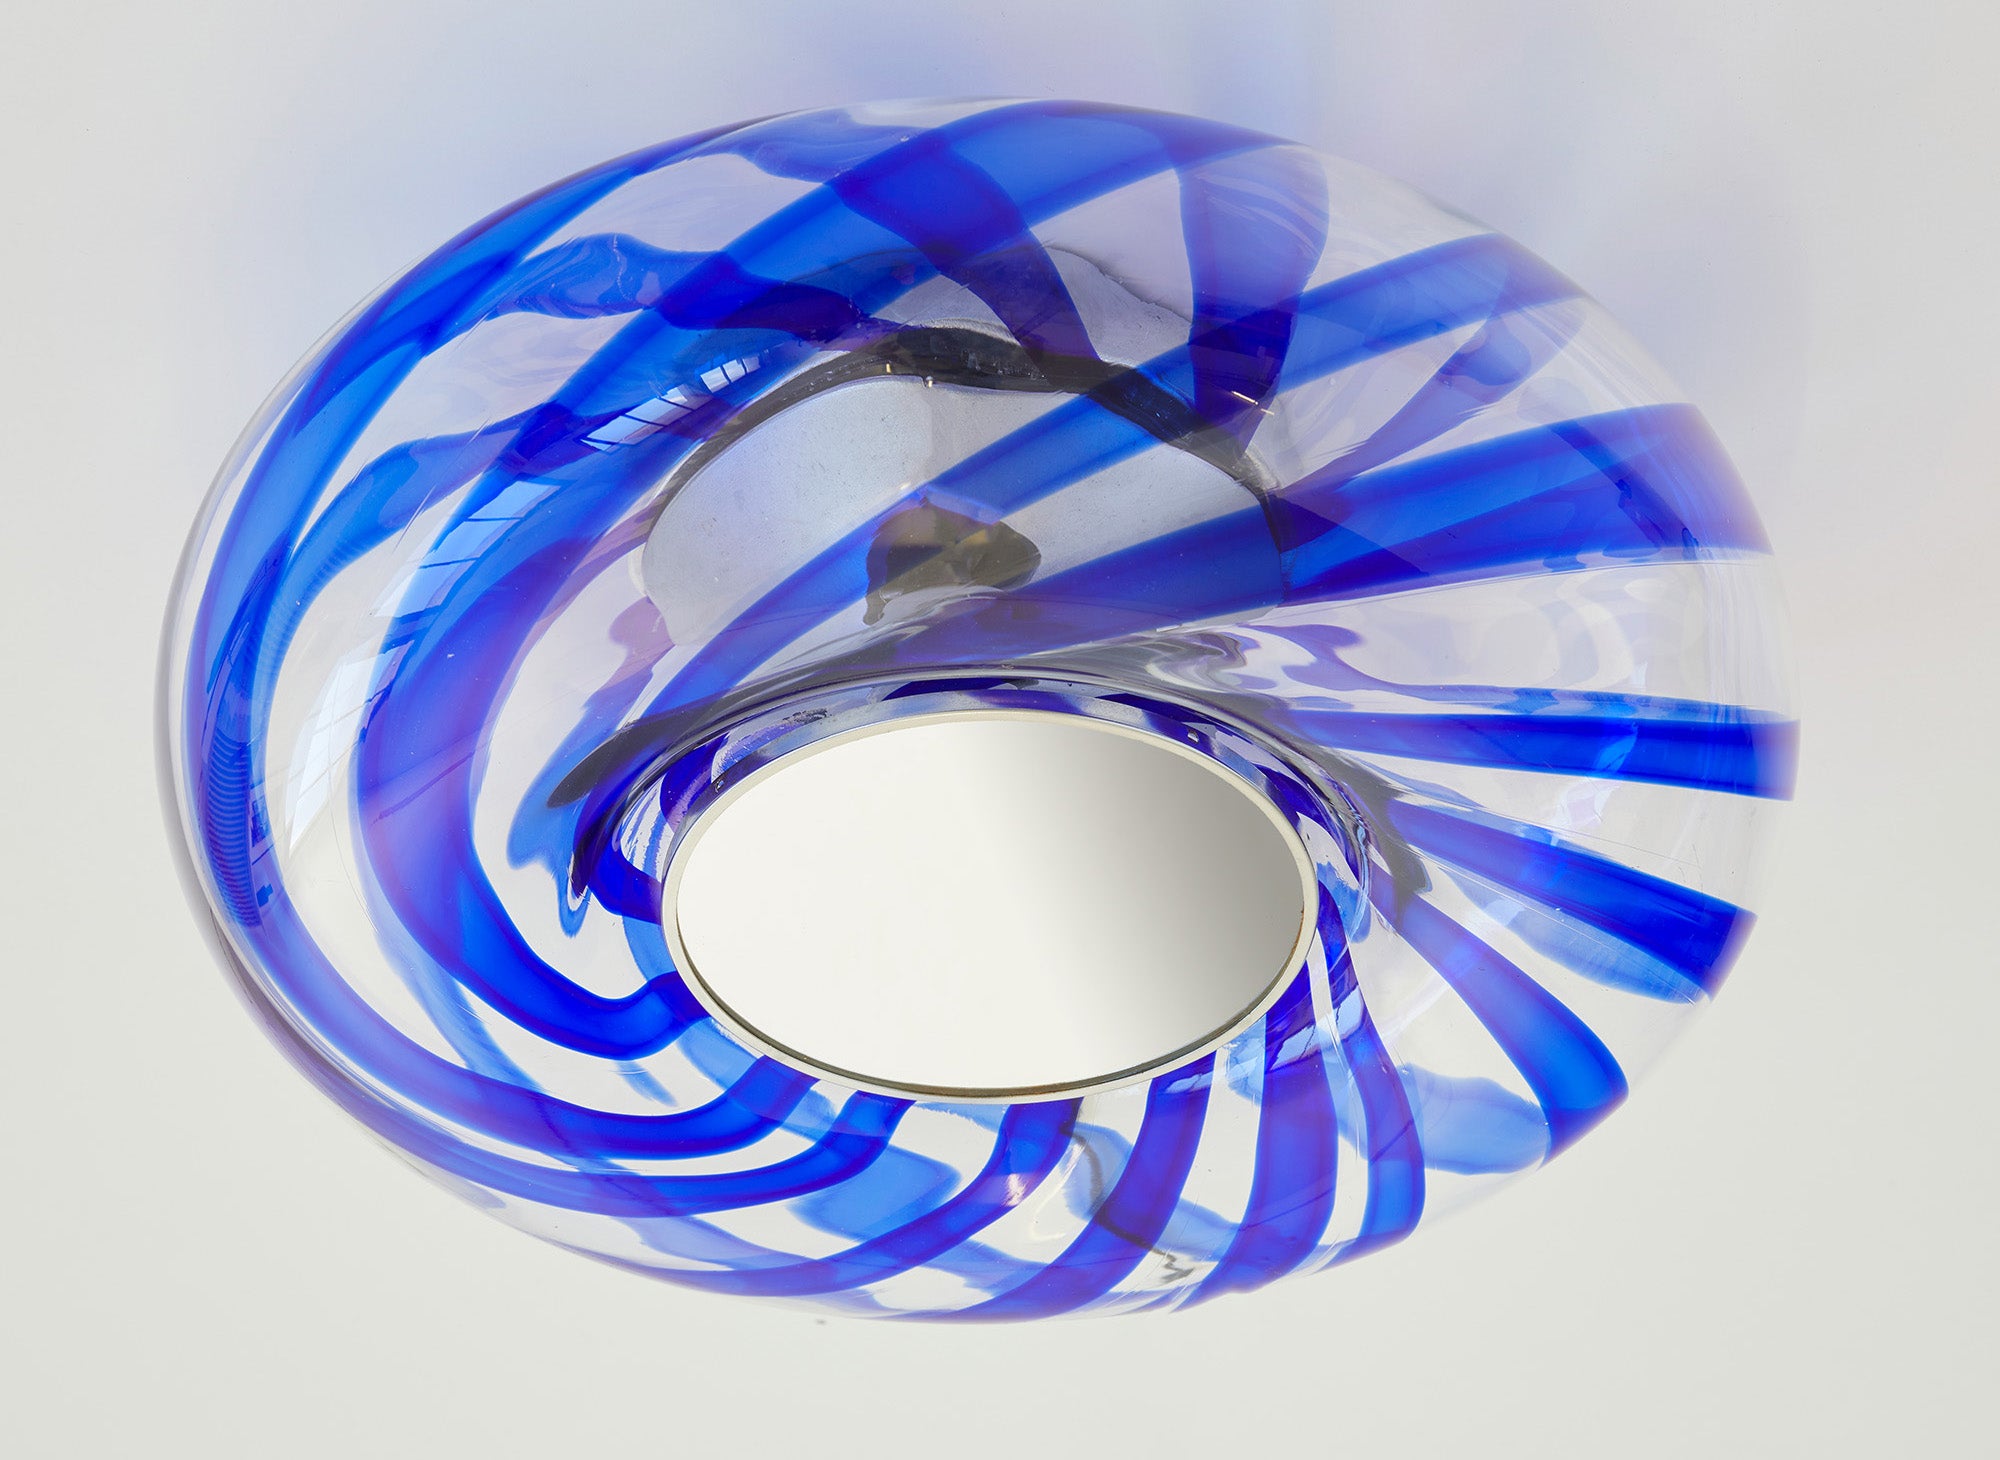 Wunderschöne Unterputzleuchte mit einem großen runden Diffusor aus mundgeblasenem Murano-Glas mit wunderschön gewellten tiefblauen Strudeln im Glas.

Im Inneren des Glasschirms befindet sich ein konischer Metallkern mit drei Lichtquellen.

Dies ist